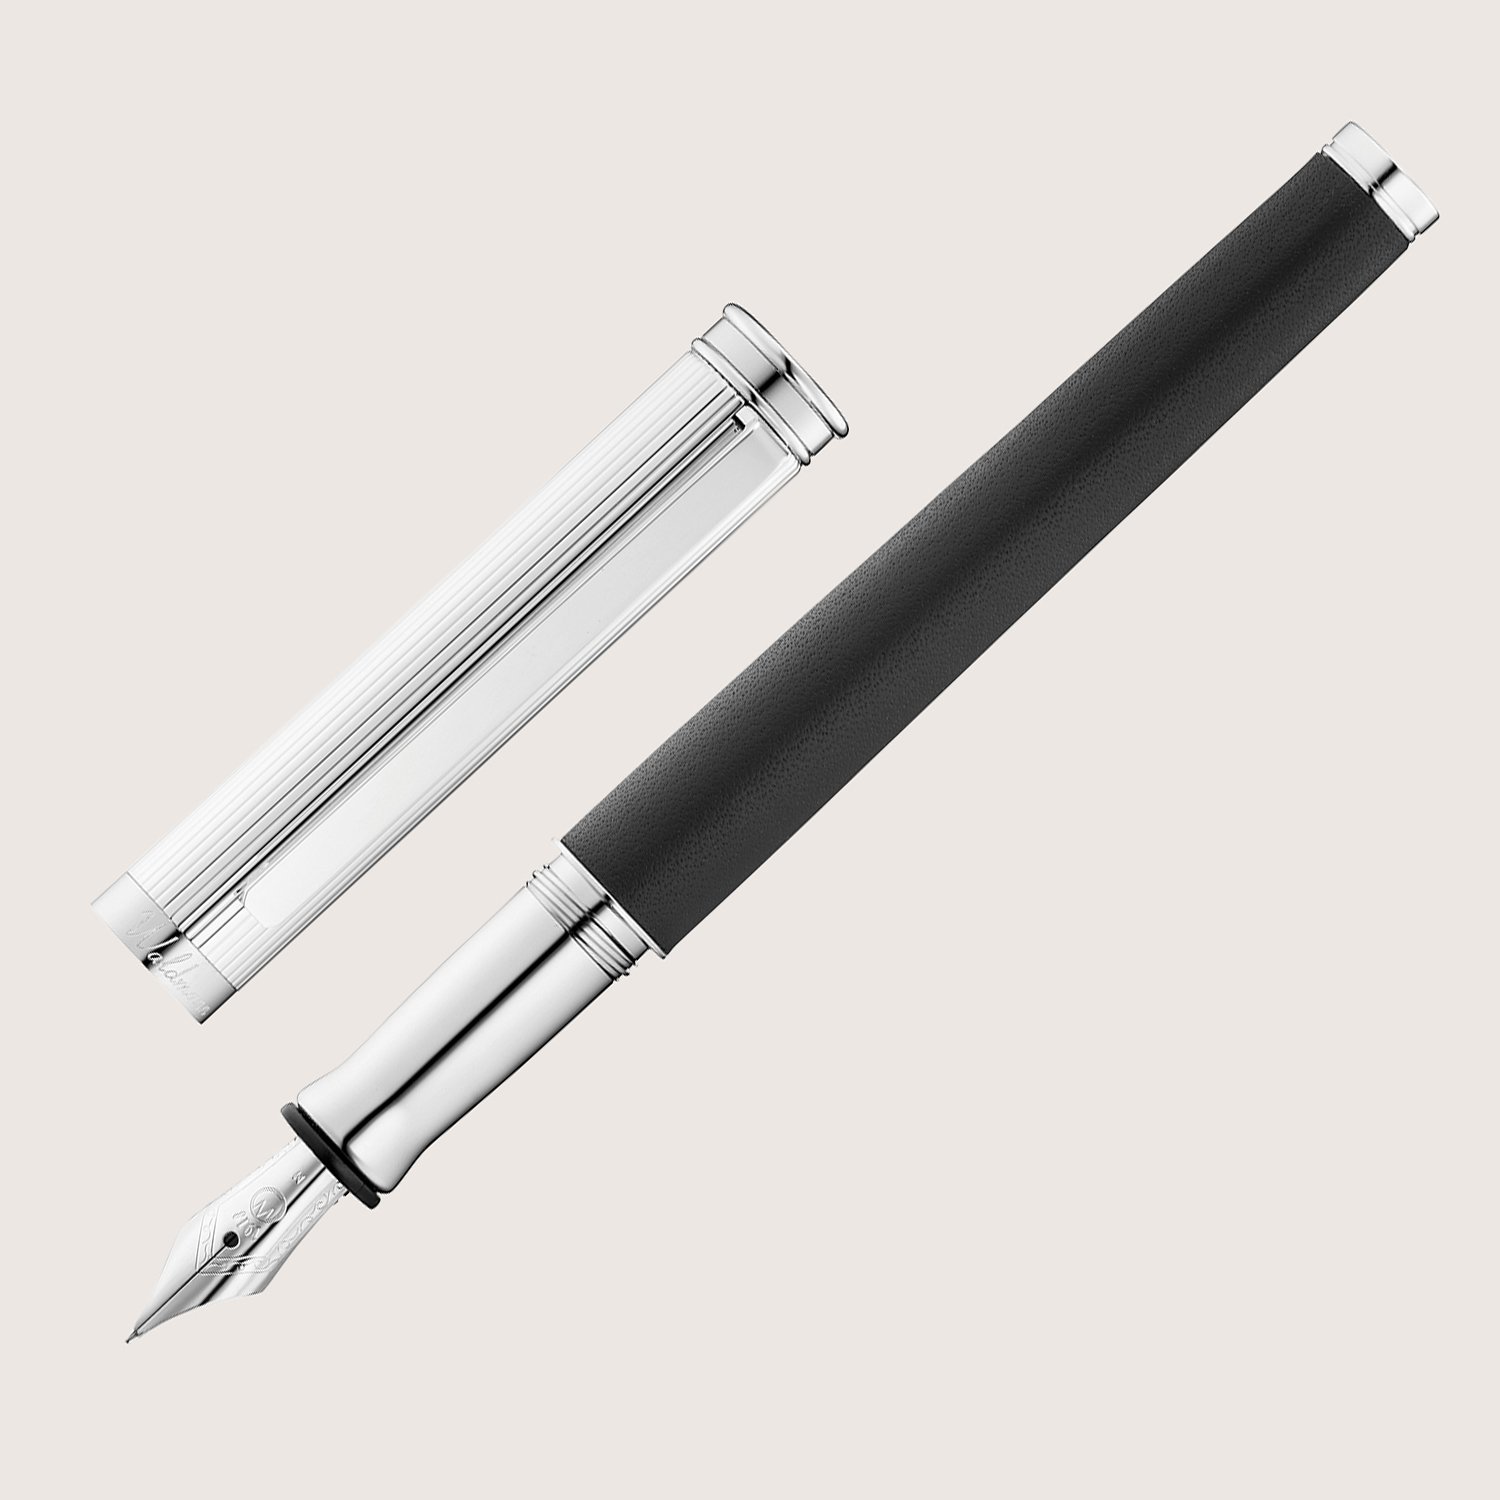 SOLON Füllfederhalter mit Edelstahlfeder B Silber Linien-Design Nappaleder schwarz